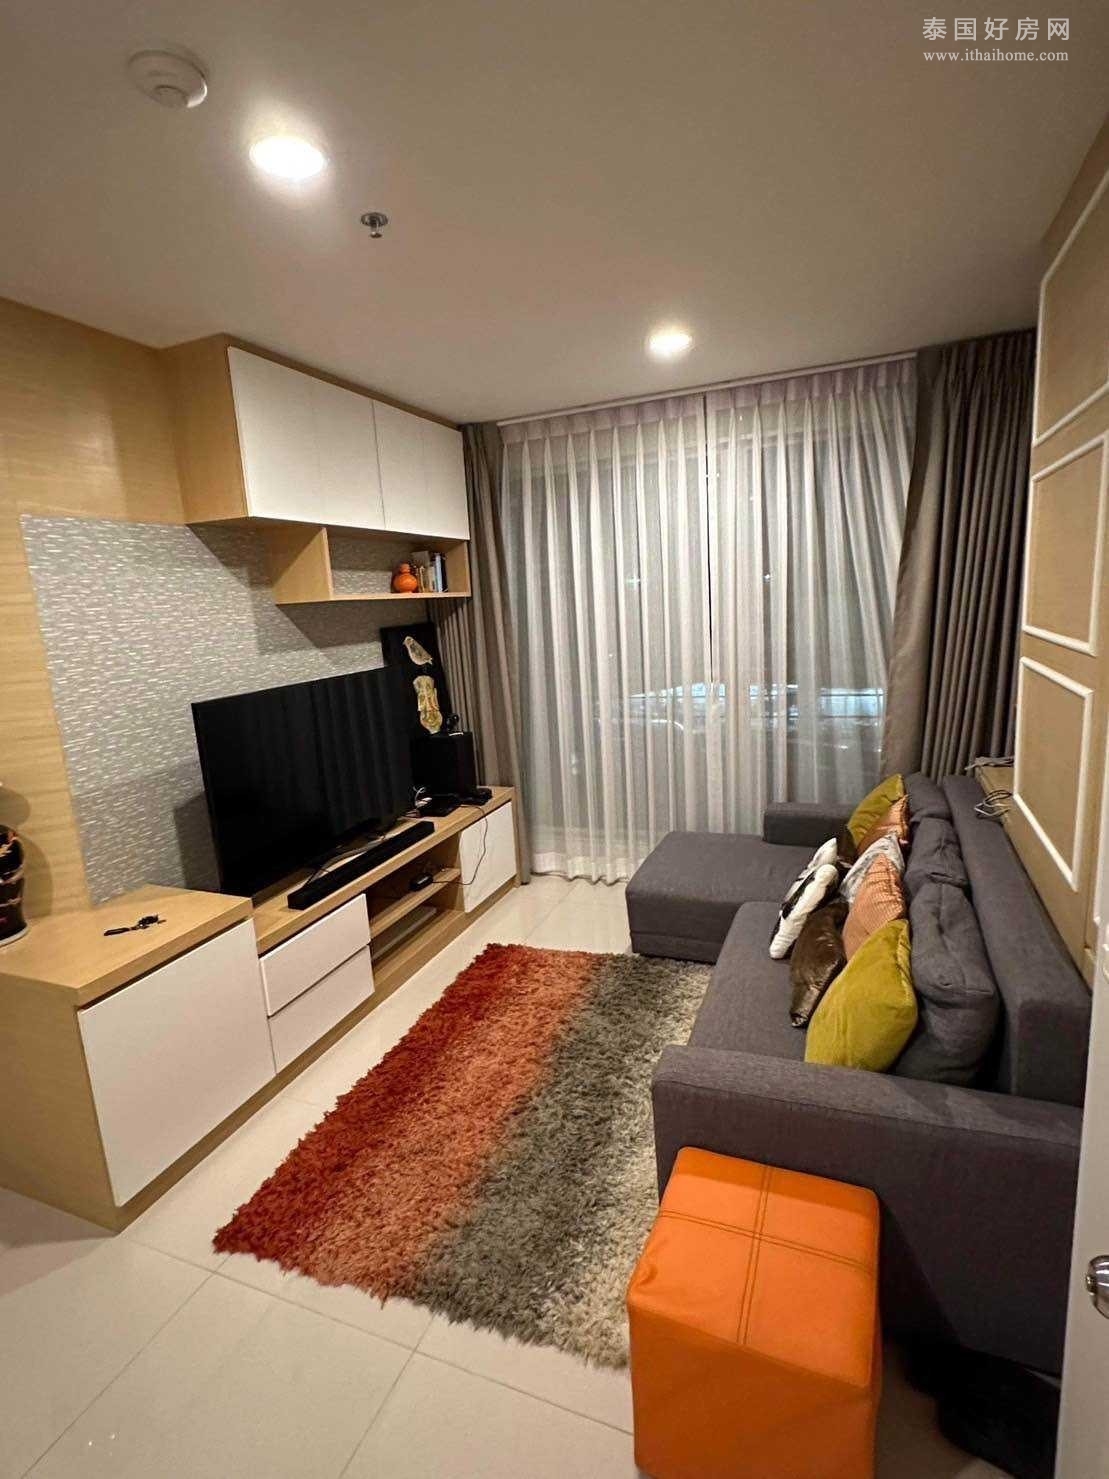 Life @ Ratchada-Huay Kwang 公寓出售 2卧64平米 450万泰铢